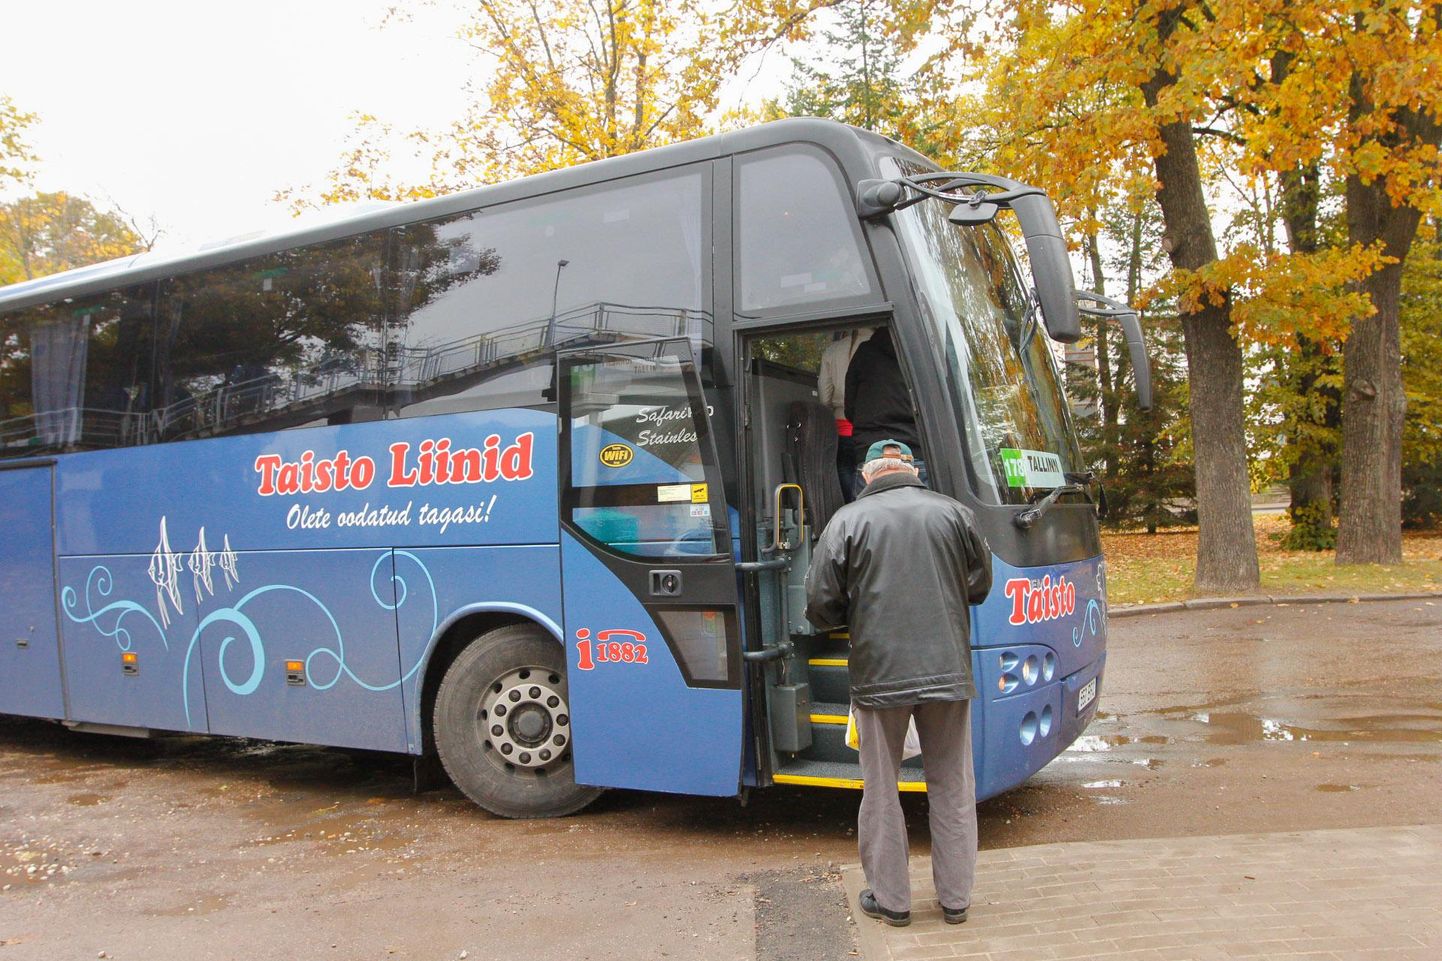 Taisto reisibussid on Eesti ja Euroopa teedel sõitnud 1993. aastast.